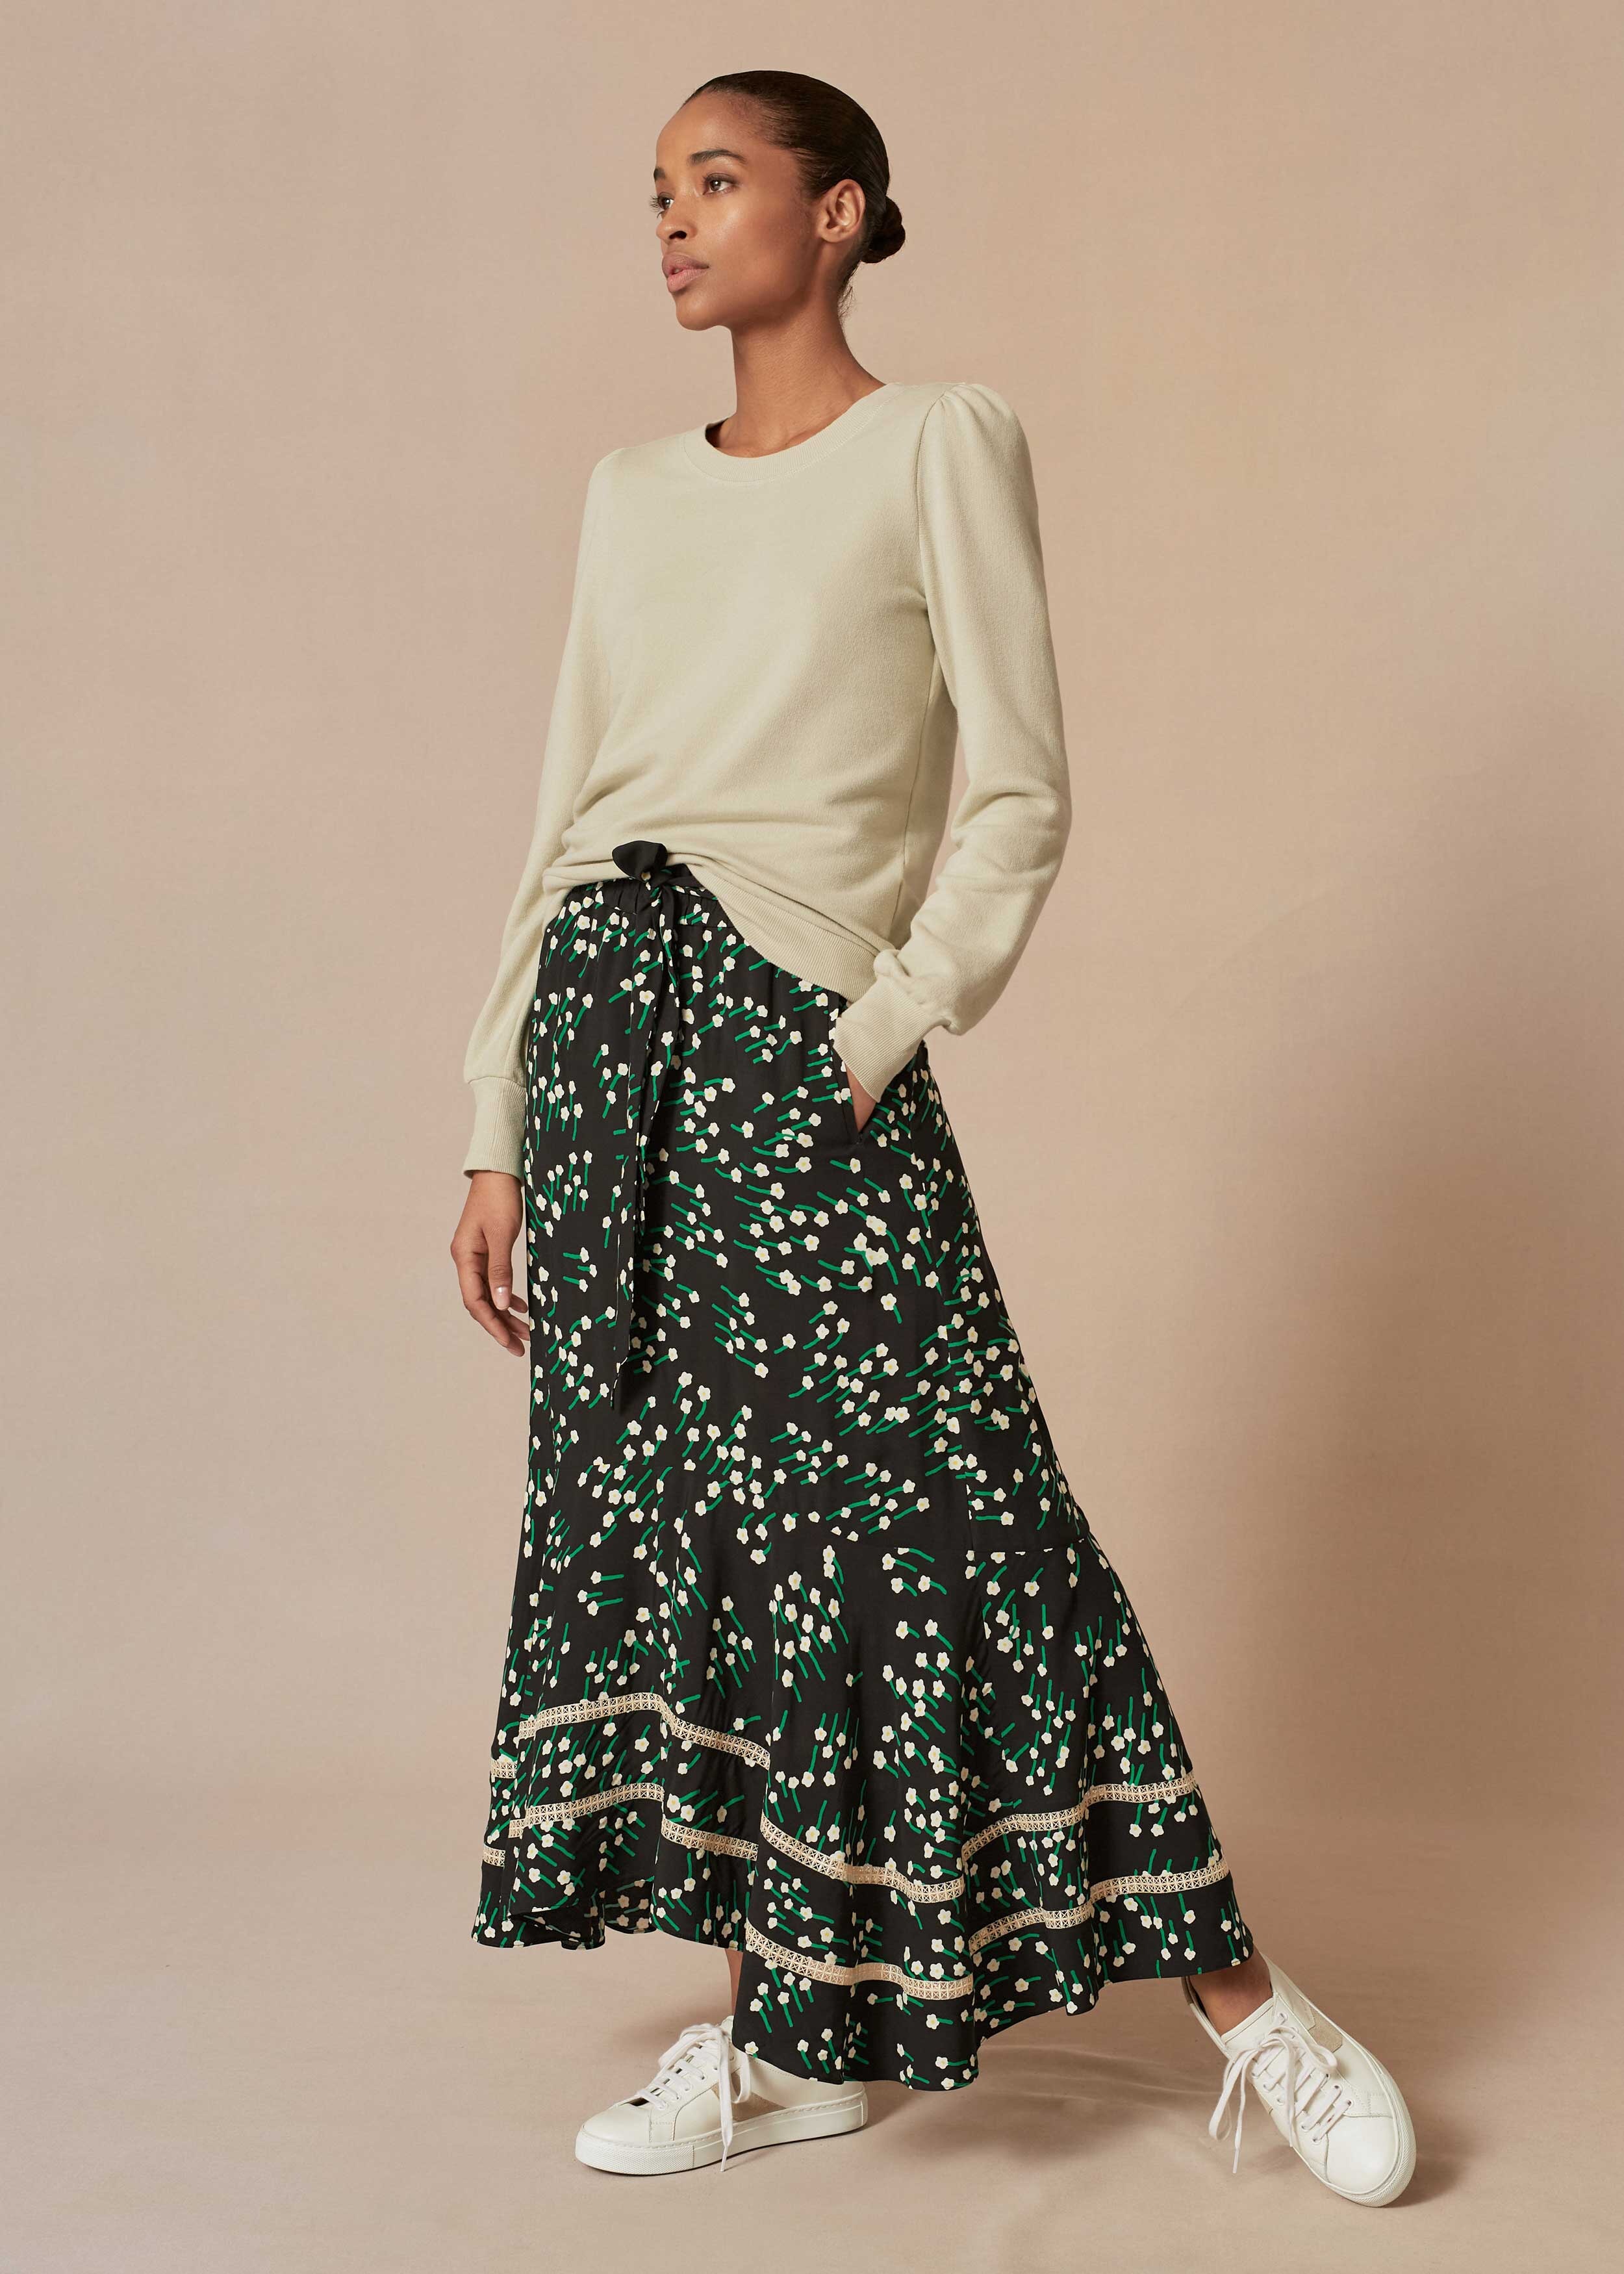 Drifting Floral Lace Insert Skirt + Belt Black/Green/White